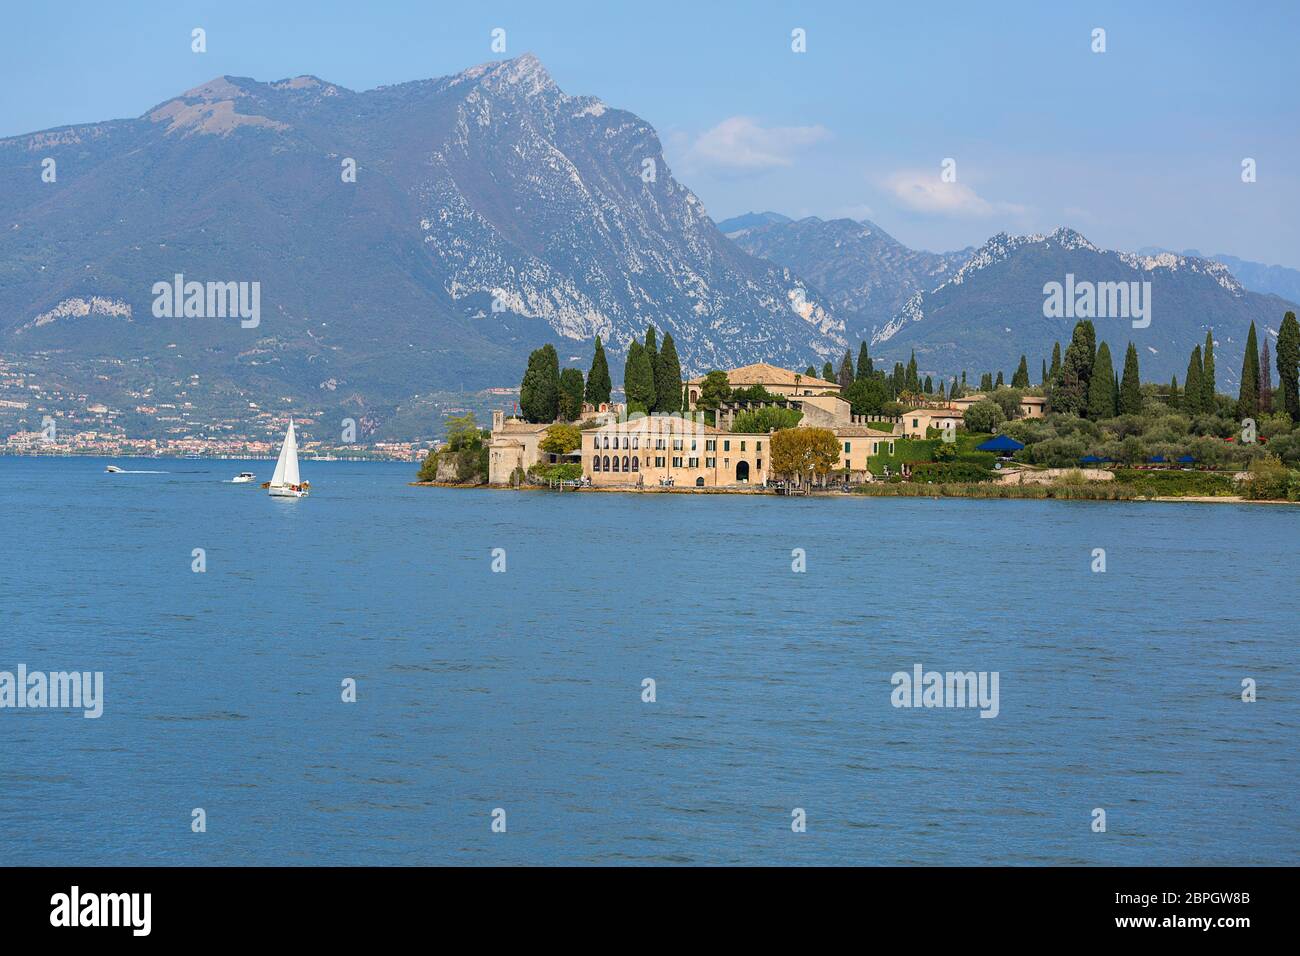 Der Gardasee, der größte See Italiens, liegt am Rande der Dolomiten, Italien Stockfoto